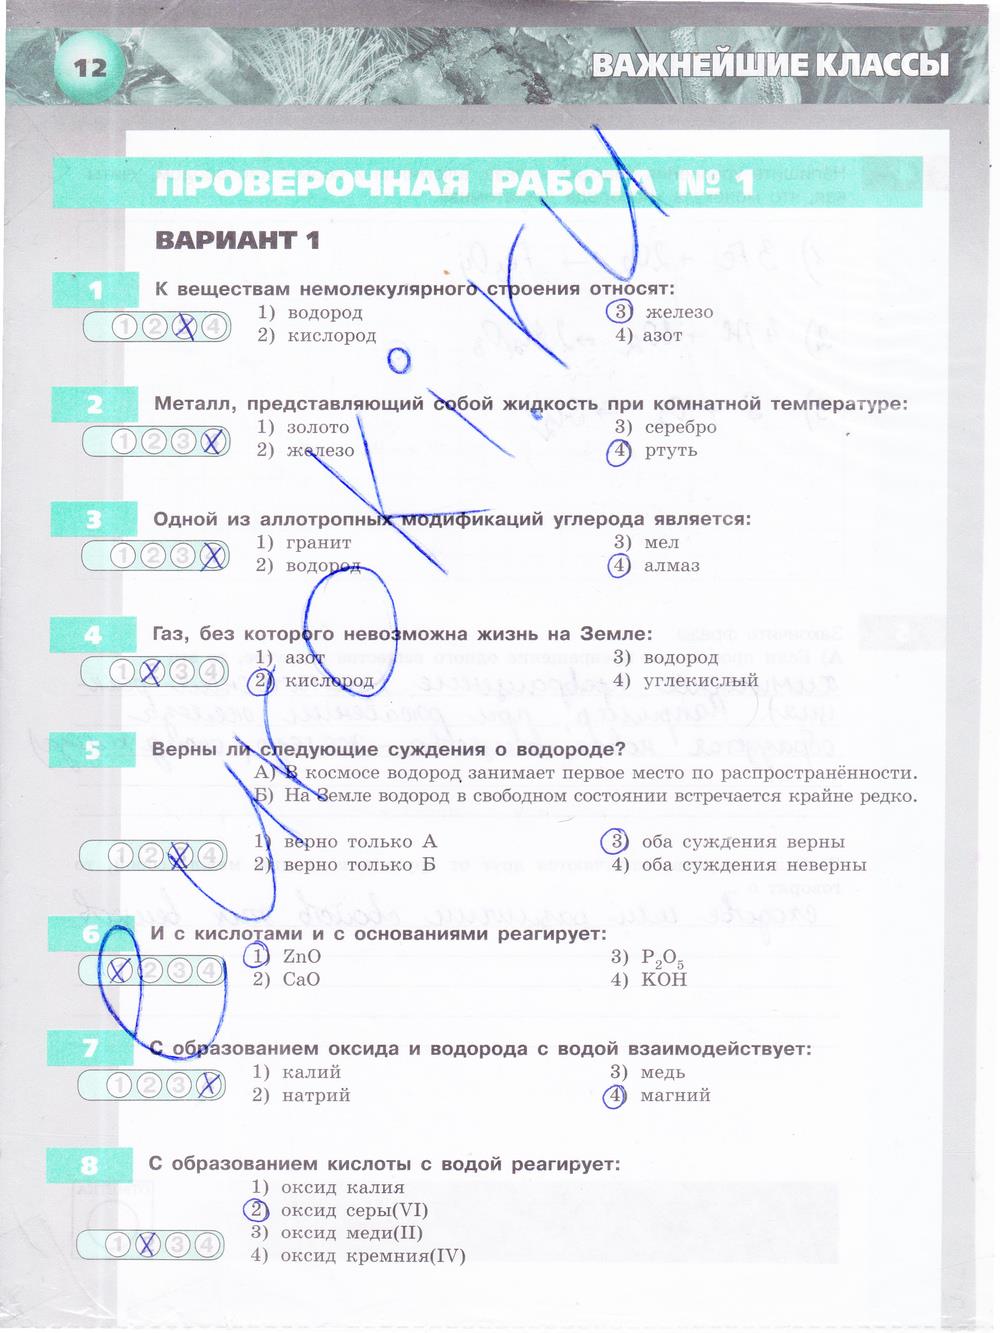 гдз 8 класс тетрадь-экзаменатор страница 12 химия Бобылева, Бирюлина